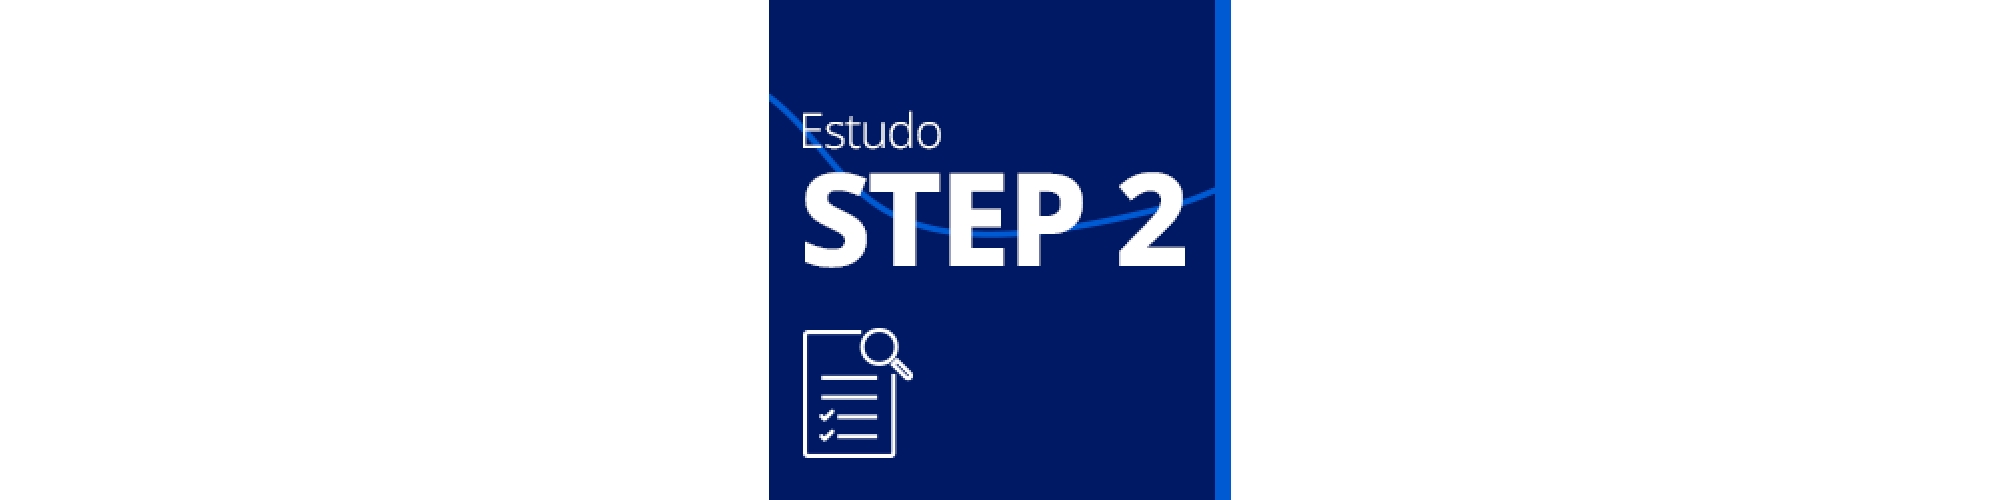 Estudo STEP2